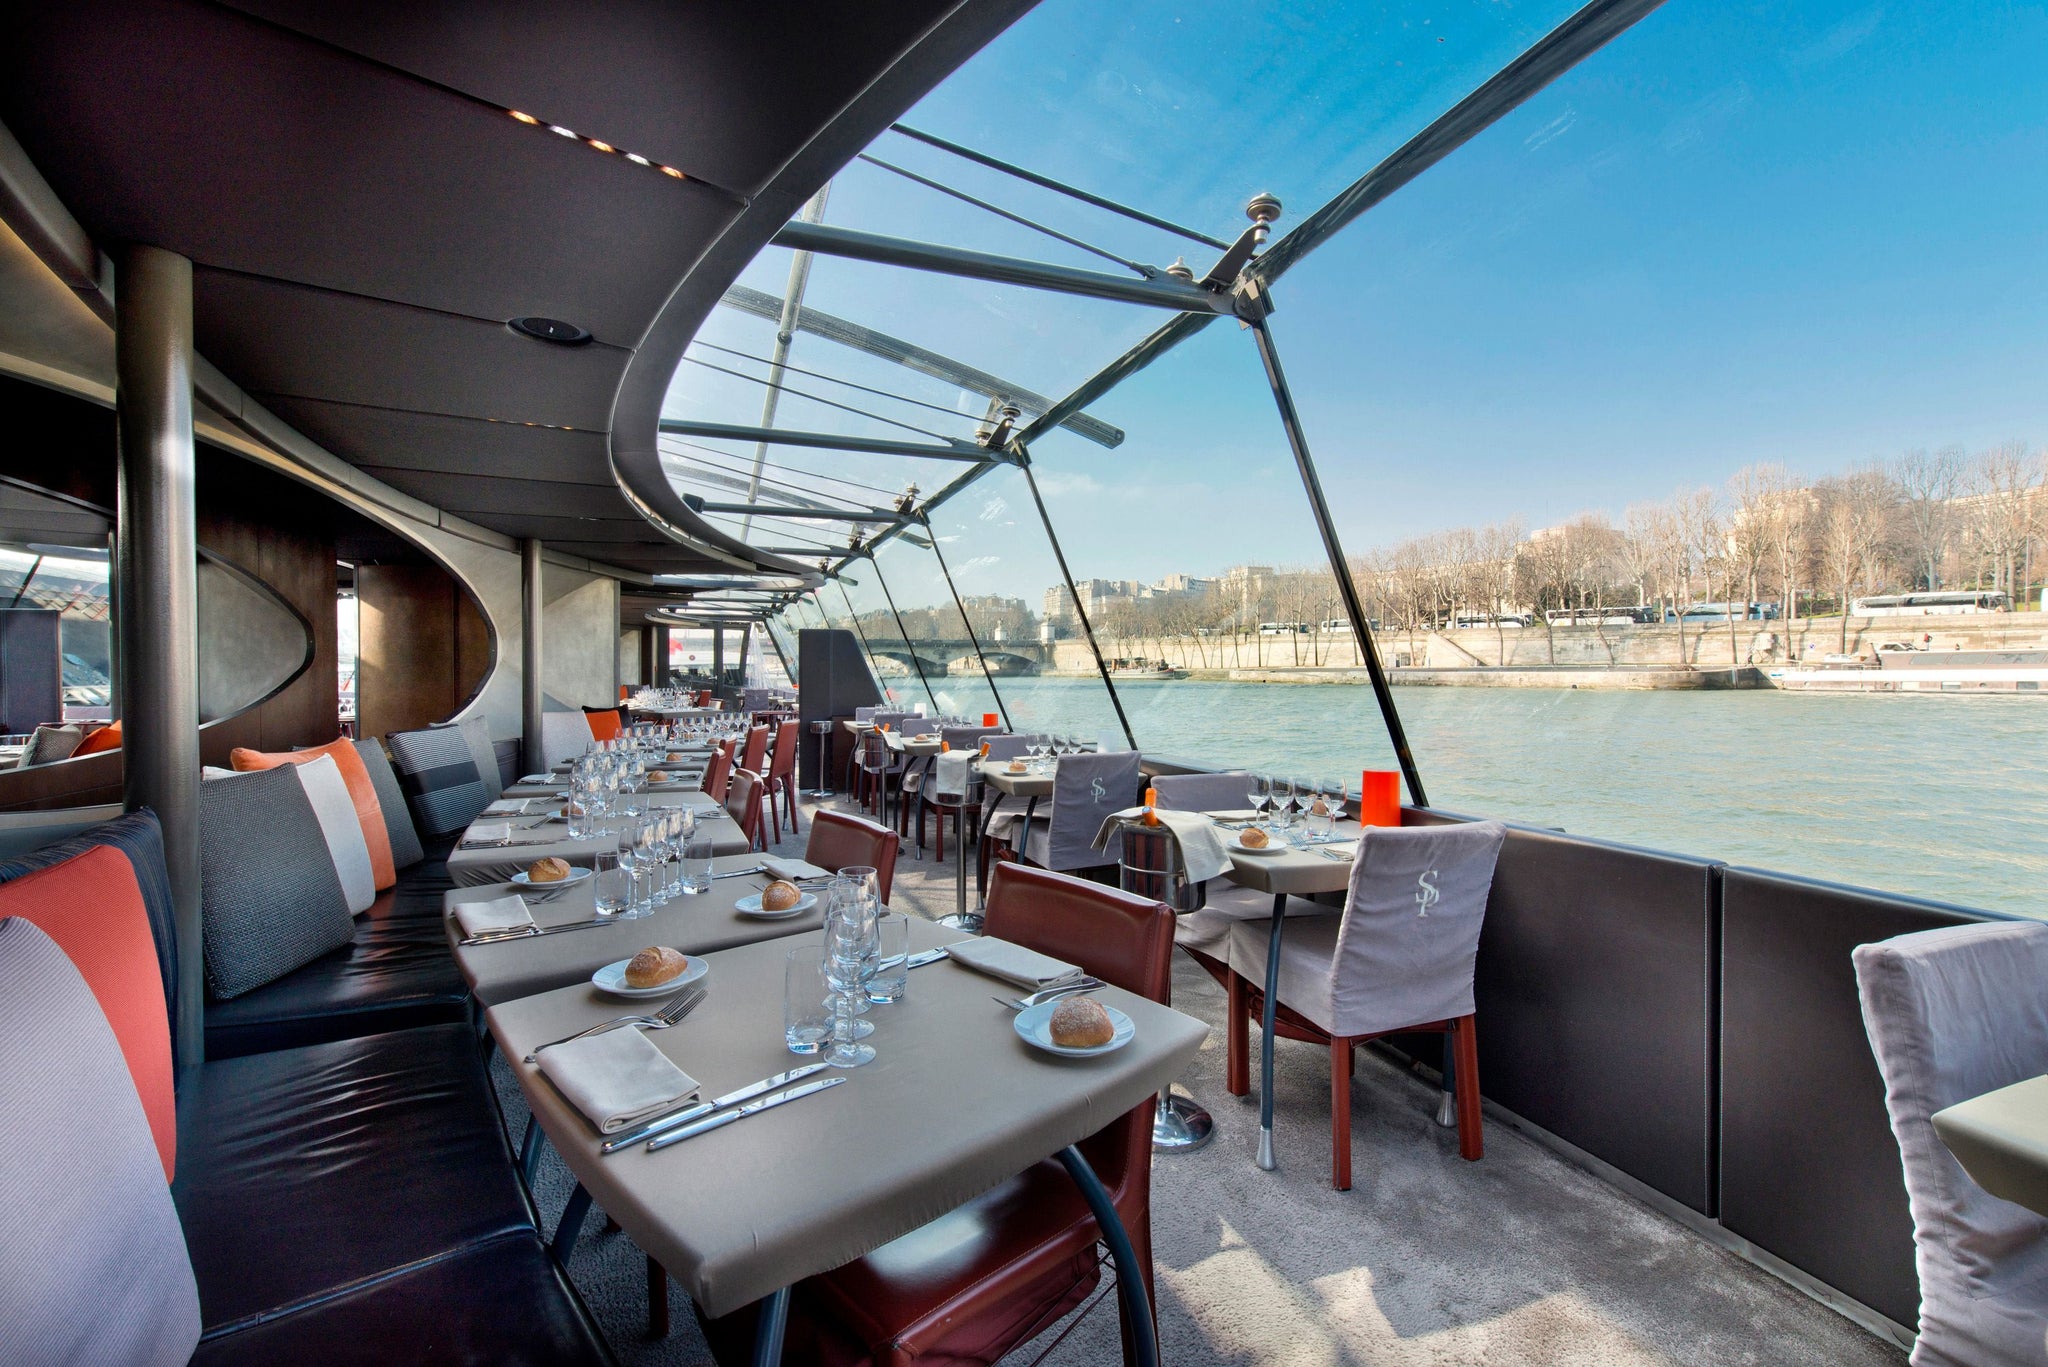 Crucero + almuerzo por el Sena: ¡vive la magia de París!